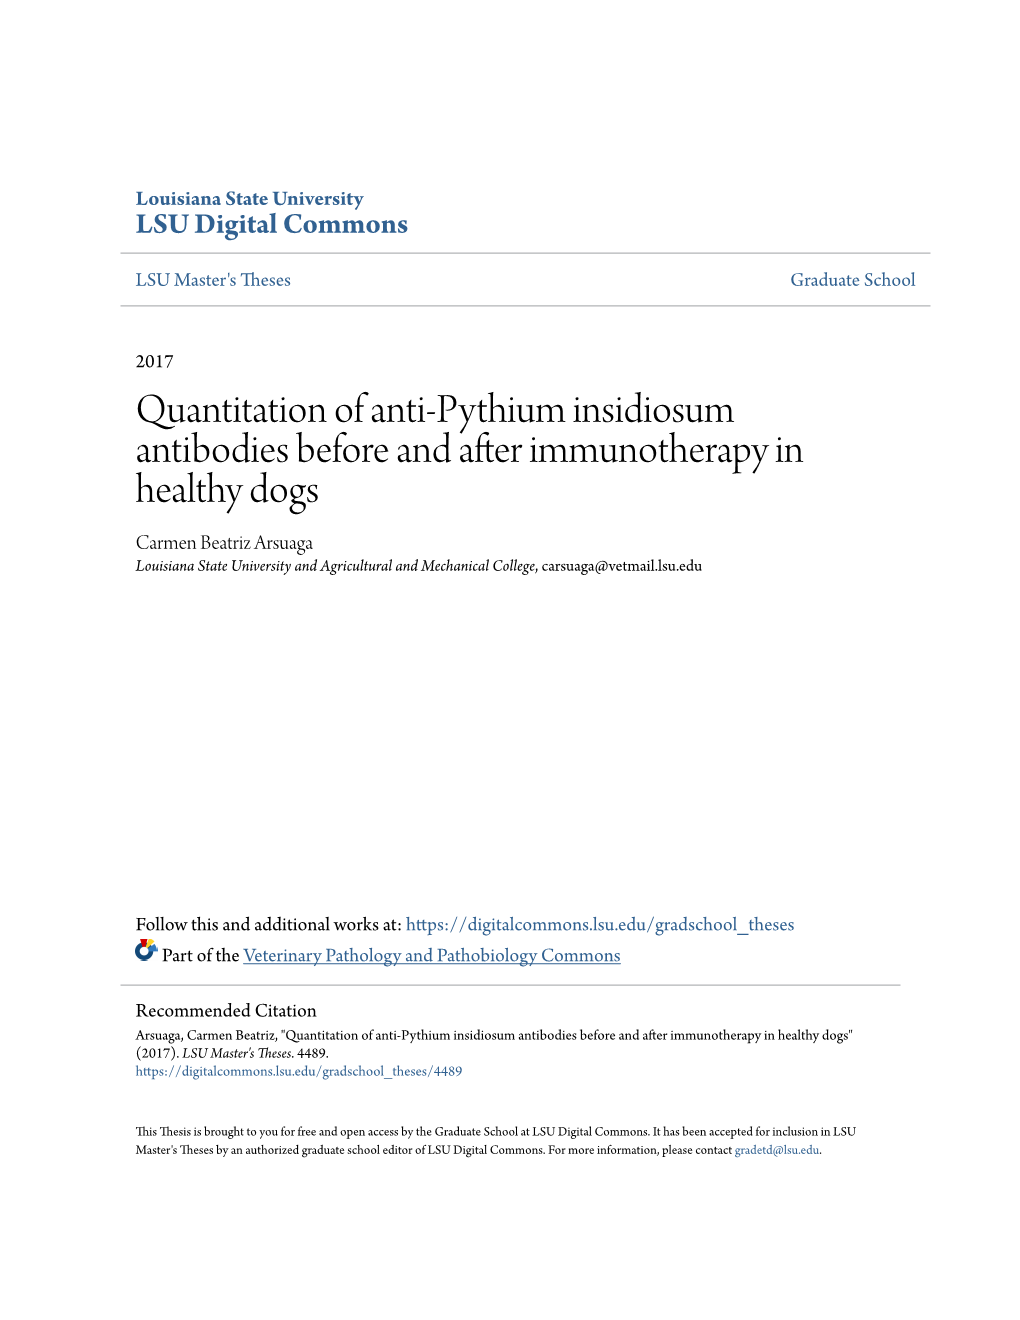 Quantitation of Anti-Pythium Insidiosum Antibodies Before And